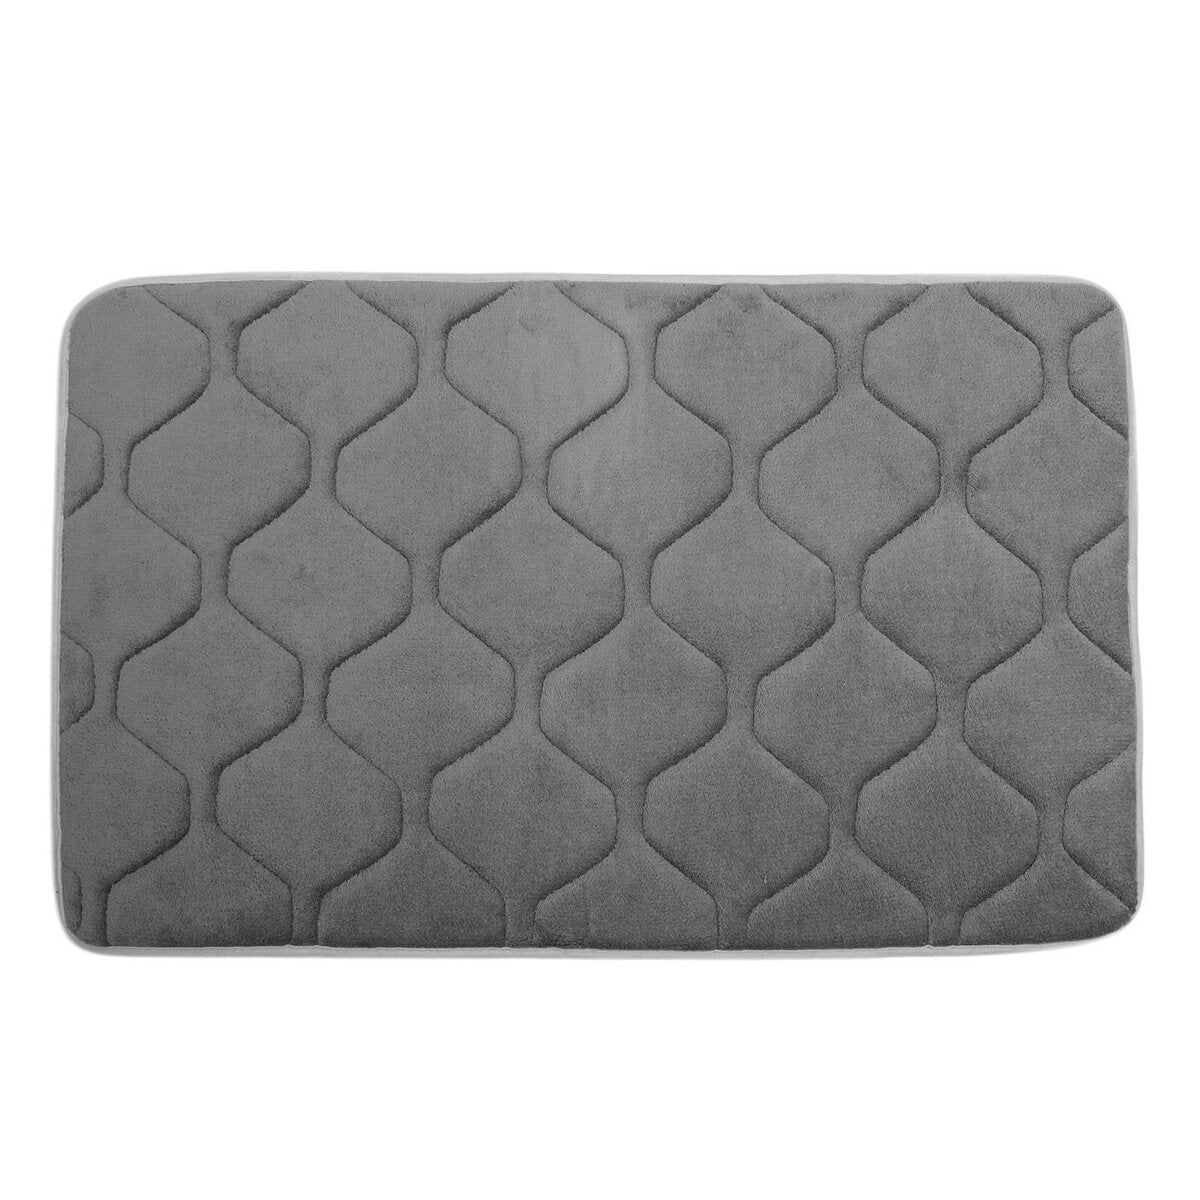 80x50cm Absorbent Anti Slip Memory Foam Carpet Bath Rug Coral Velvet Chronic Rebound Floor Mat